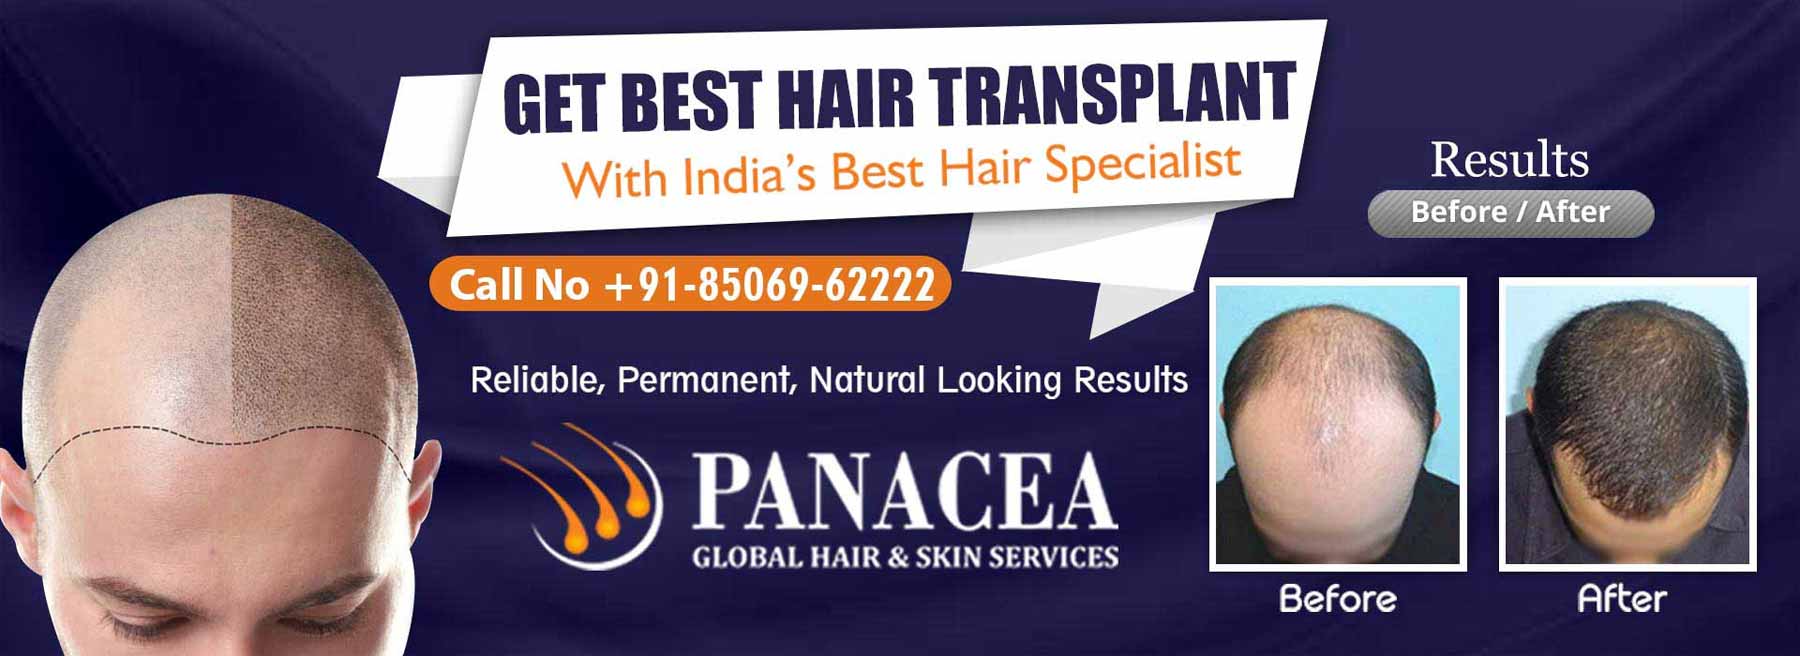 Get Best Hair Transplant - Panacea Global in Kanpur Nagar